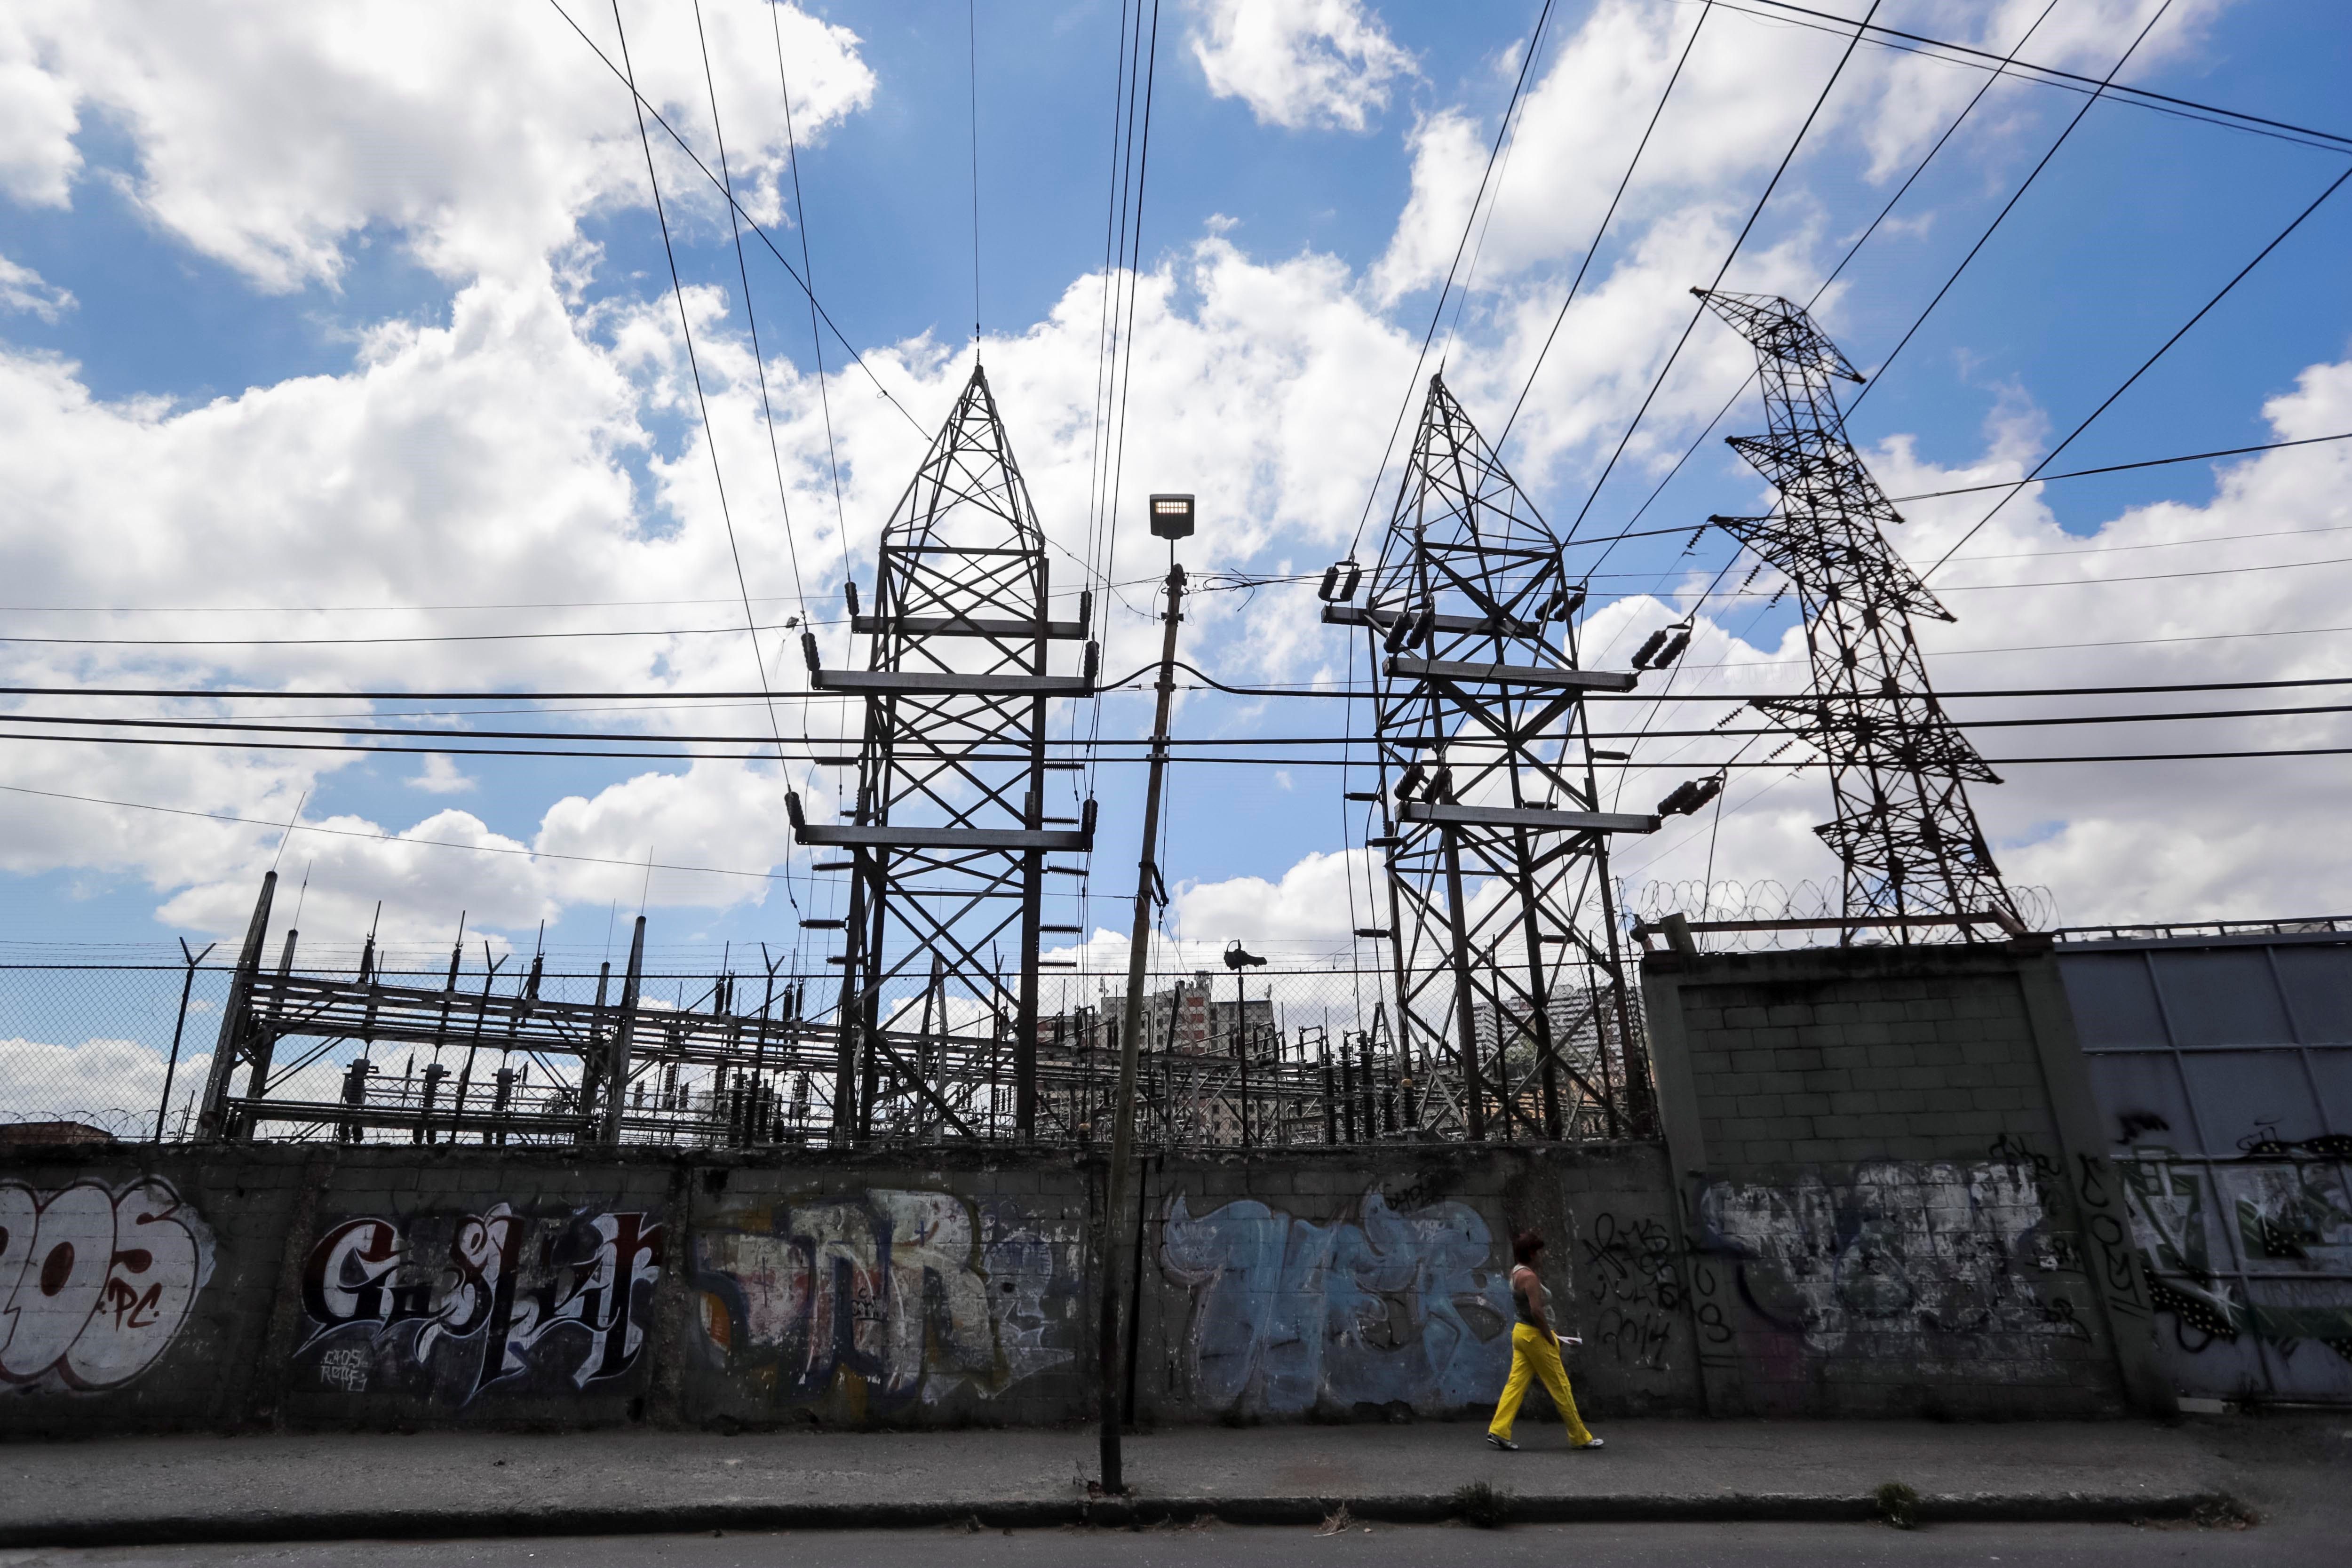 Bajones de energía eléctrica se registraron en varios estados del país este #14Abr